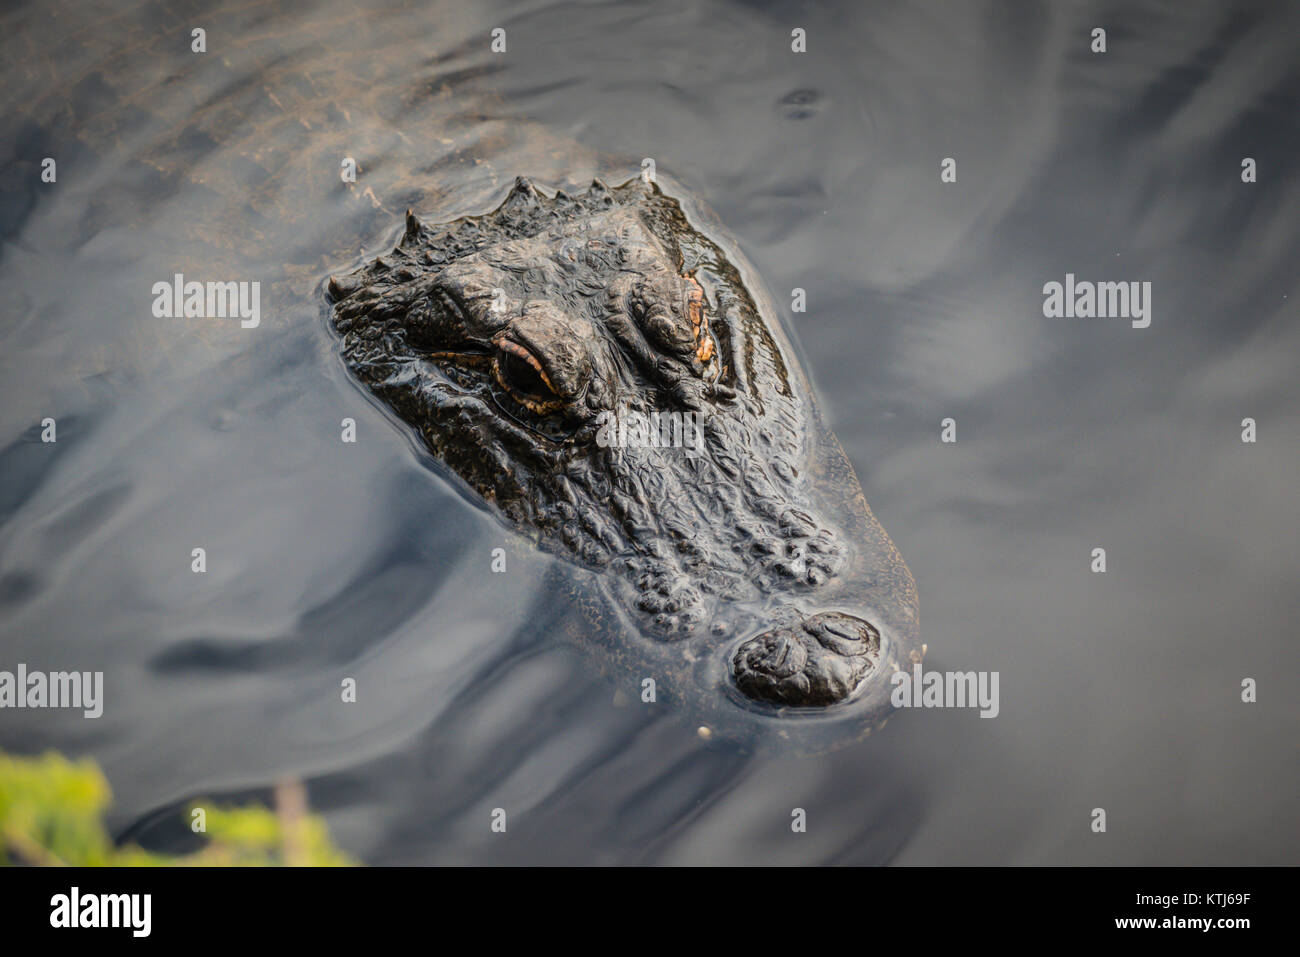 crocodile floating on water Stock Photo